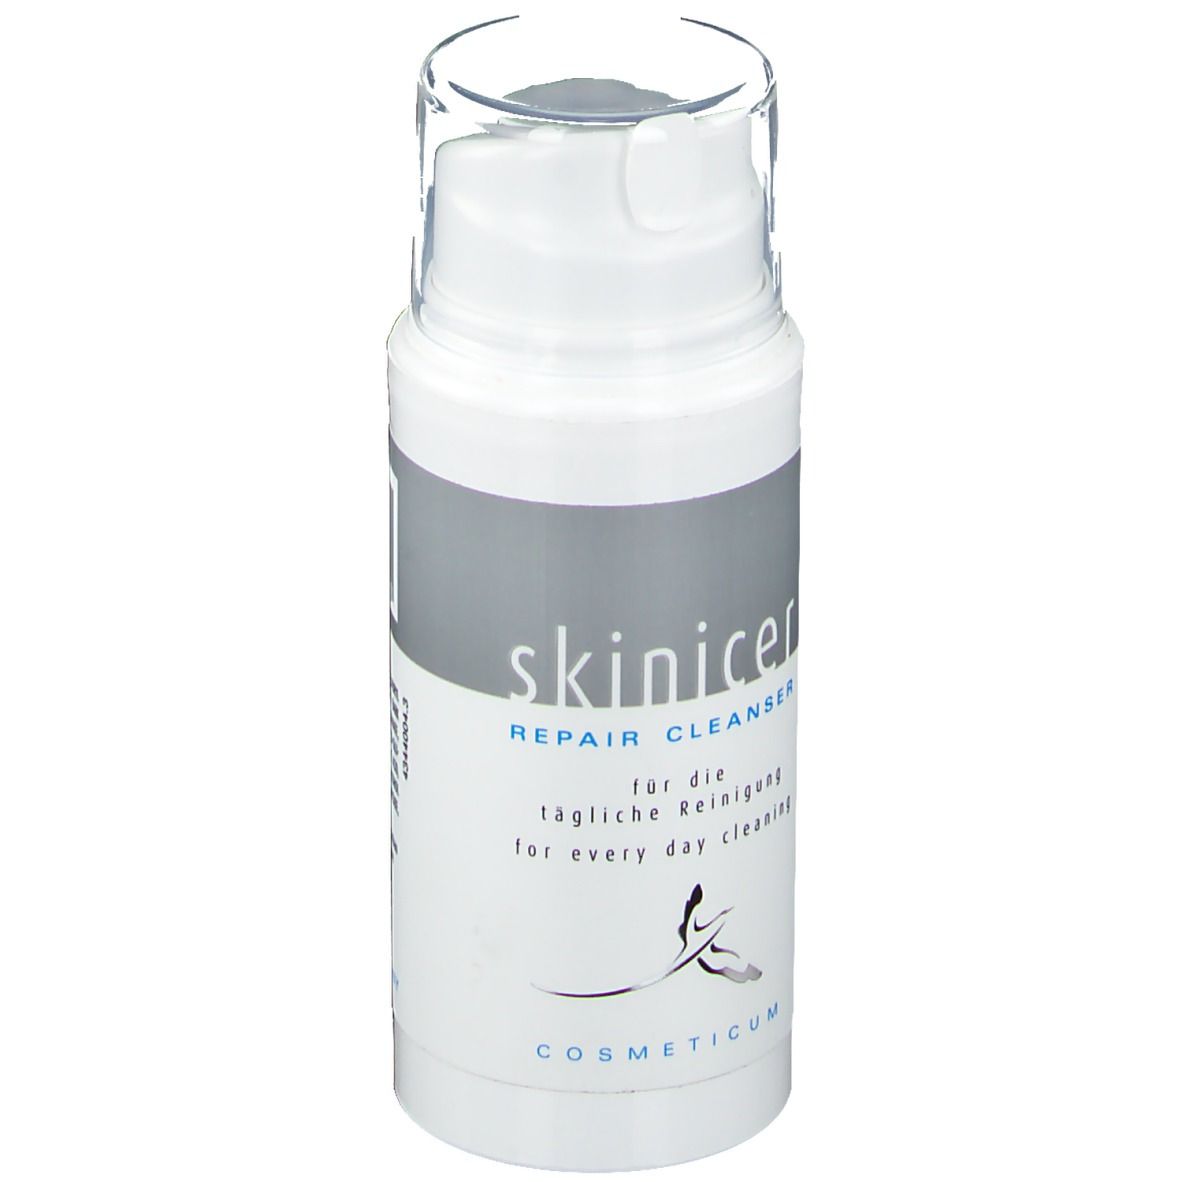 skinicer® Repair Cleanser